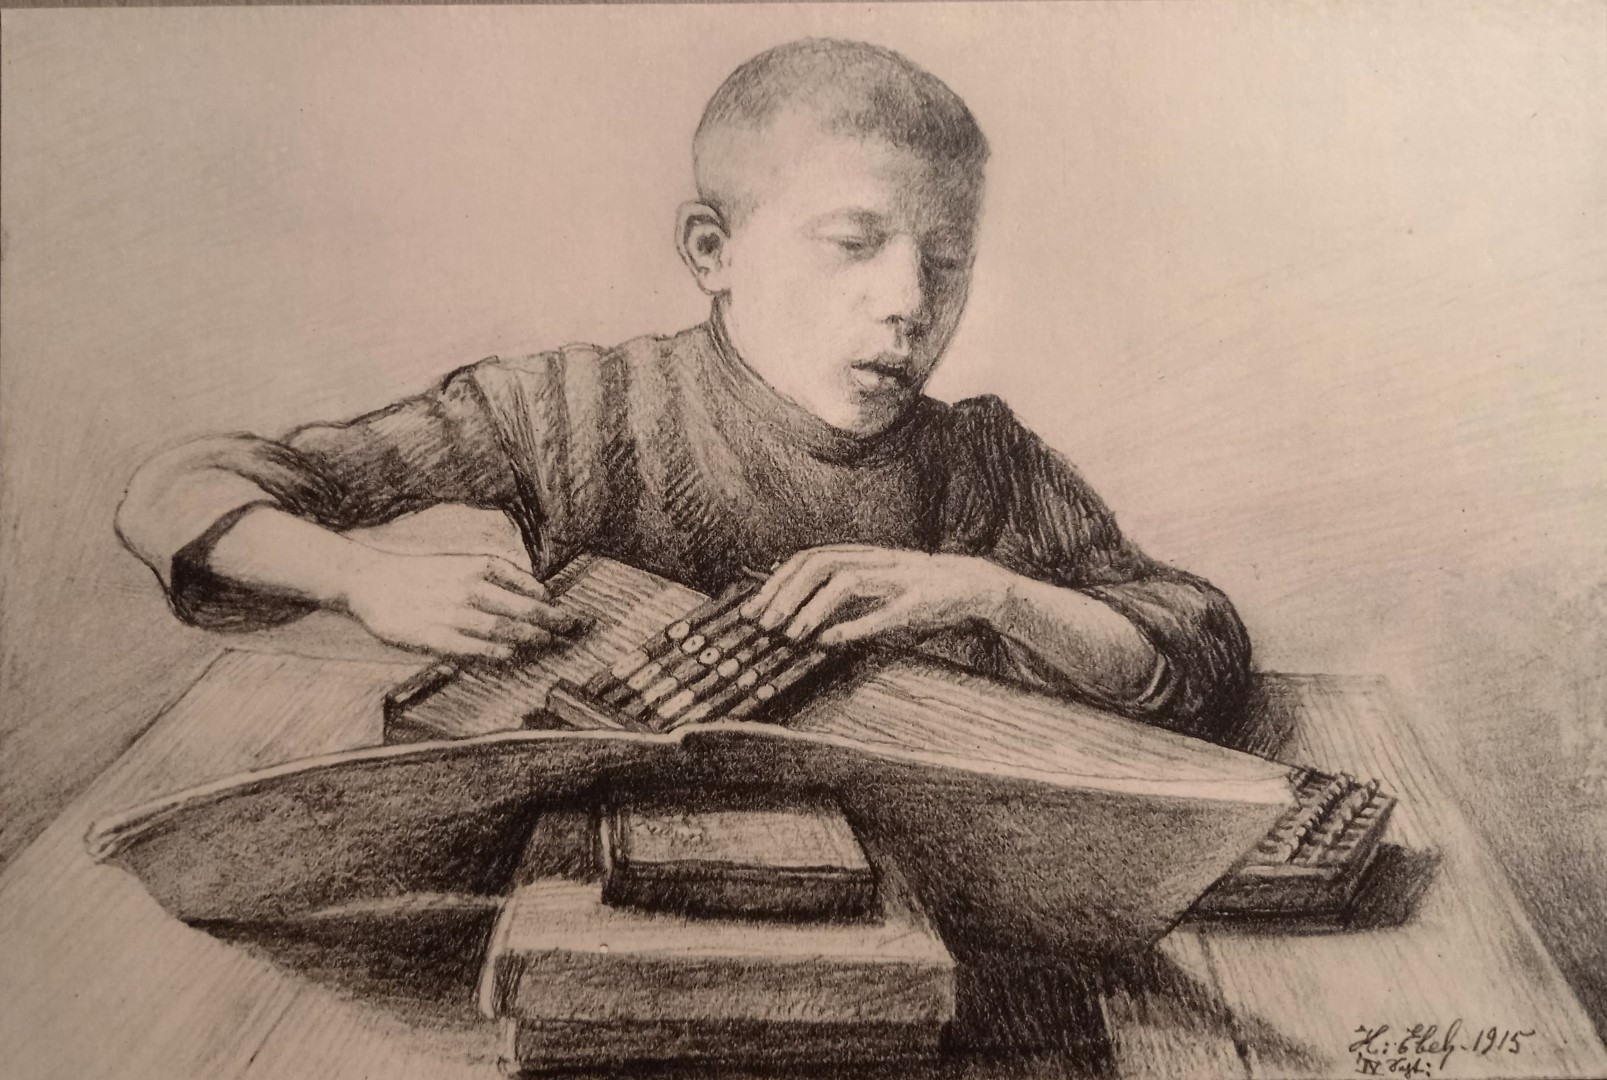 Joueur de cithare, petit neveu,1915, crayon sur papier, collection particulière.